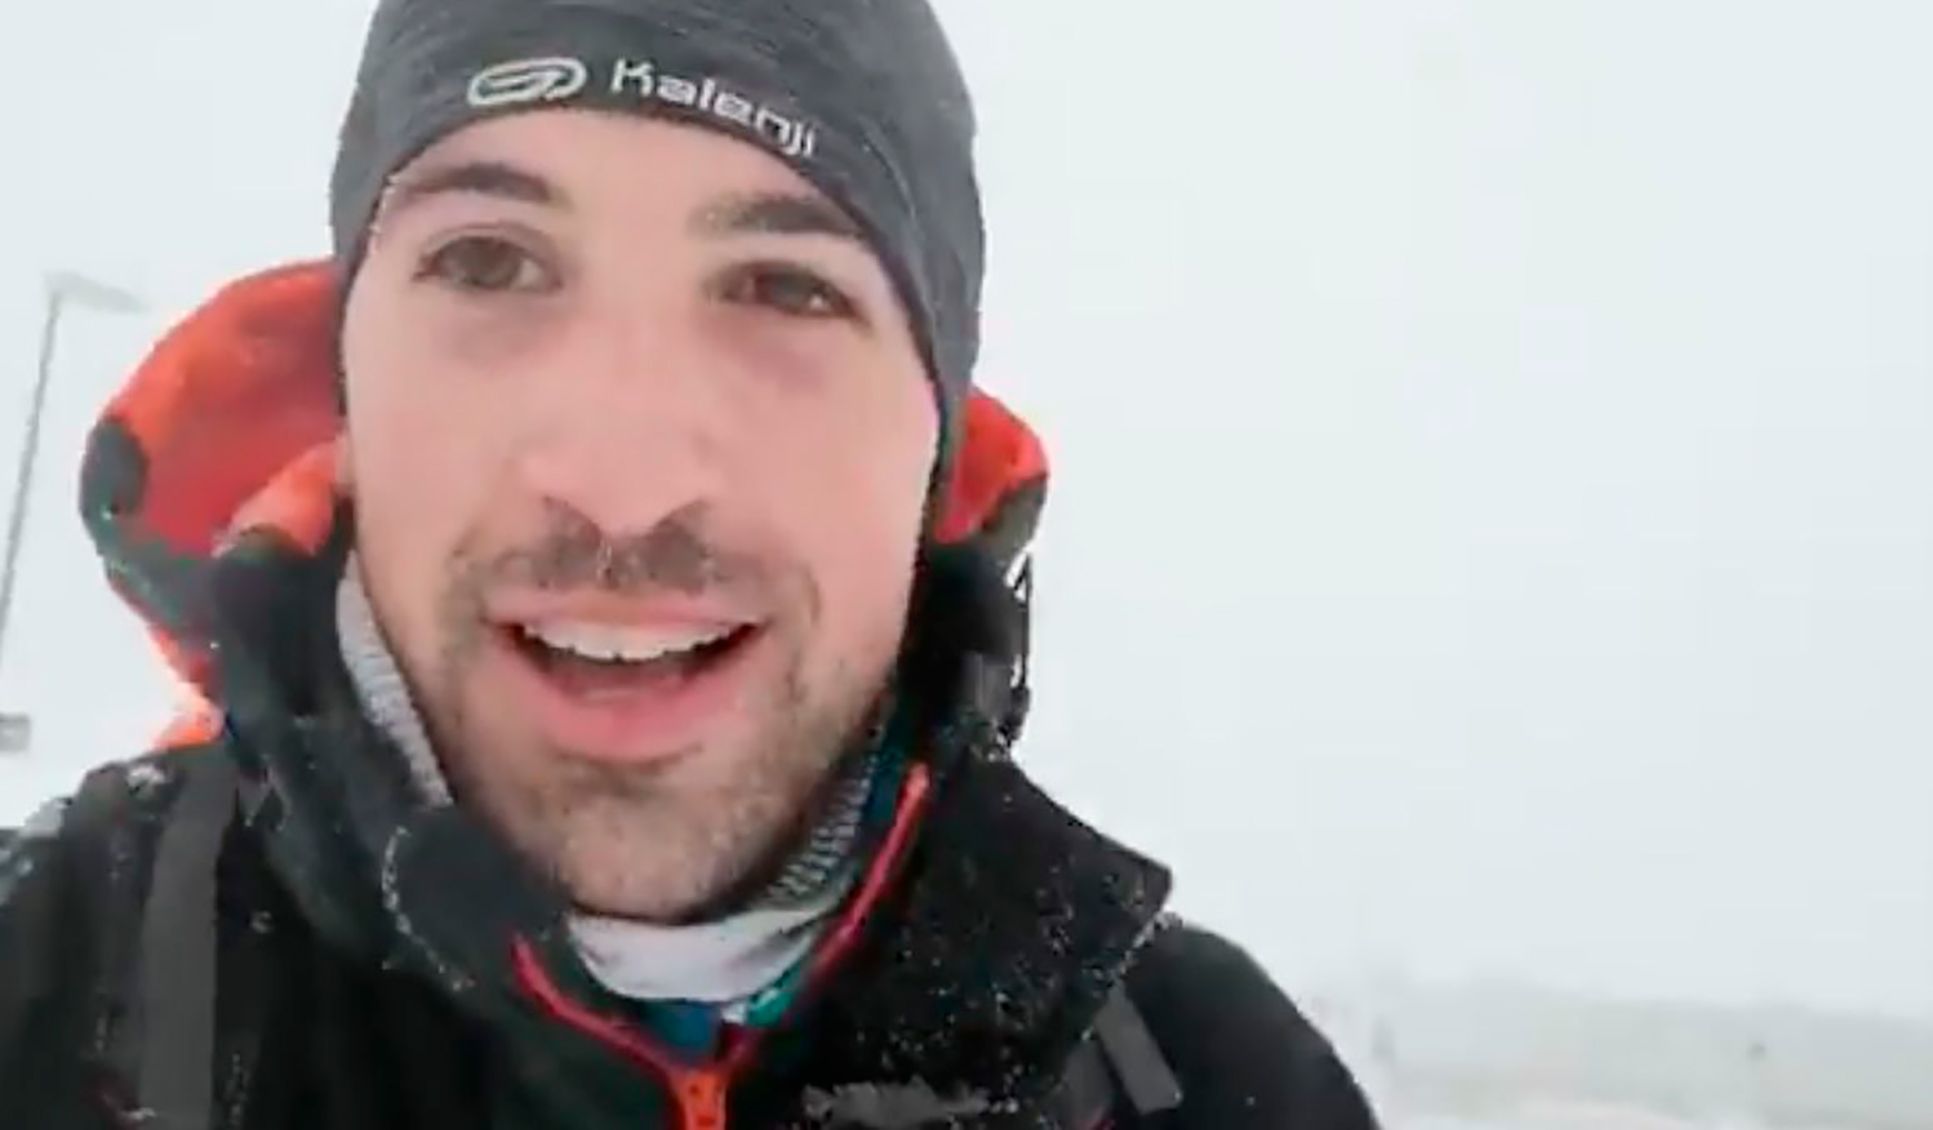 Un MIR corre 17 kilómetros por la nieve para llegar a su guardia en el Puerta de Hierro de Madrid